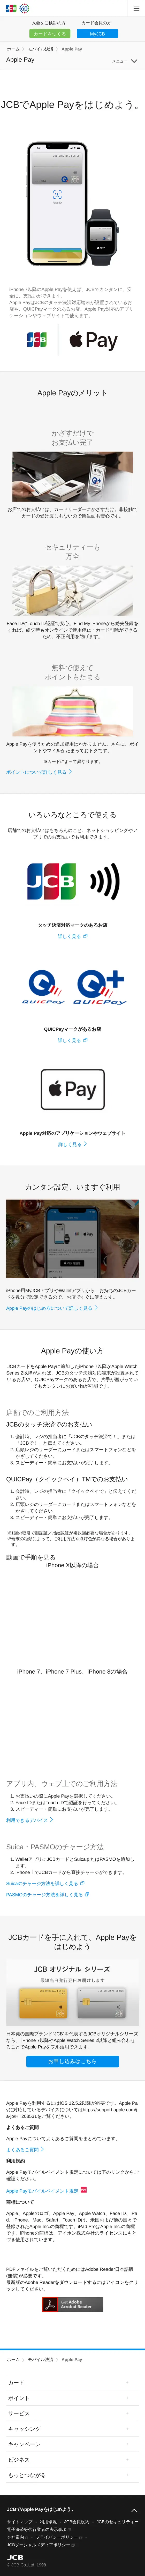 キャプチャ画面 会社名:株式会社ジェーシービープロジェクト名:Apple Pay 画面名:A デバイス名:SPカテゴリ:金融・保険タグ:SP